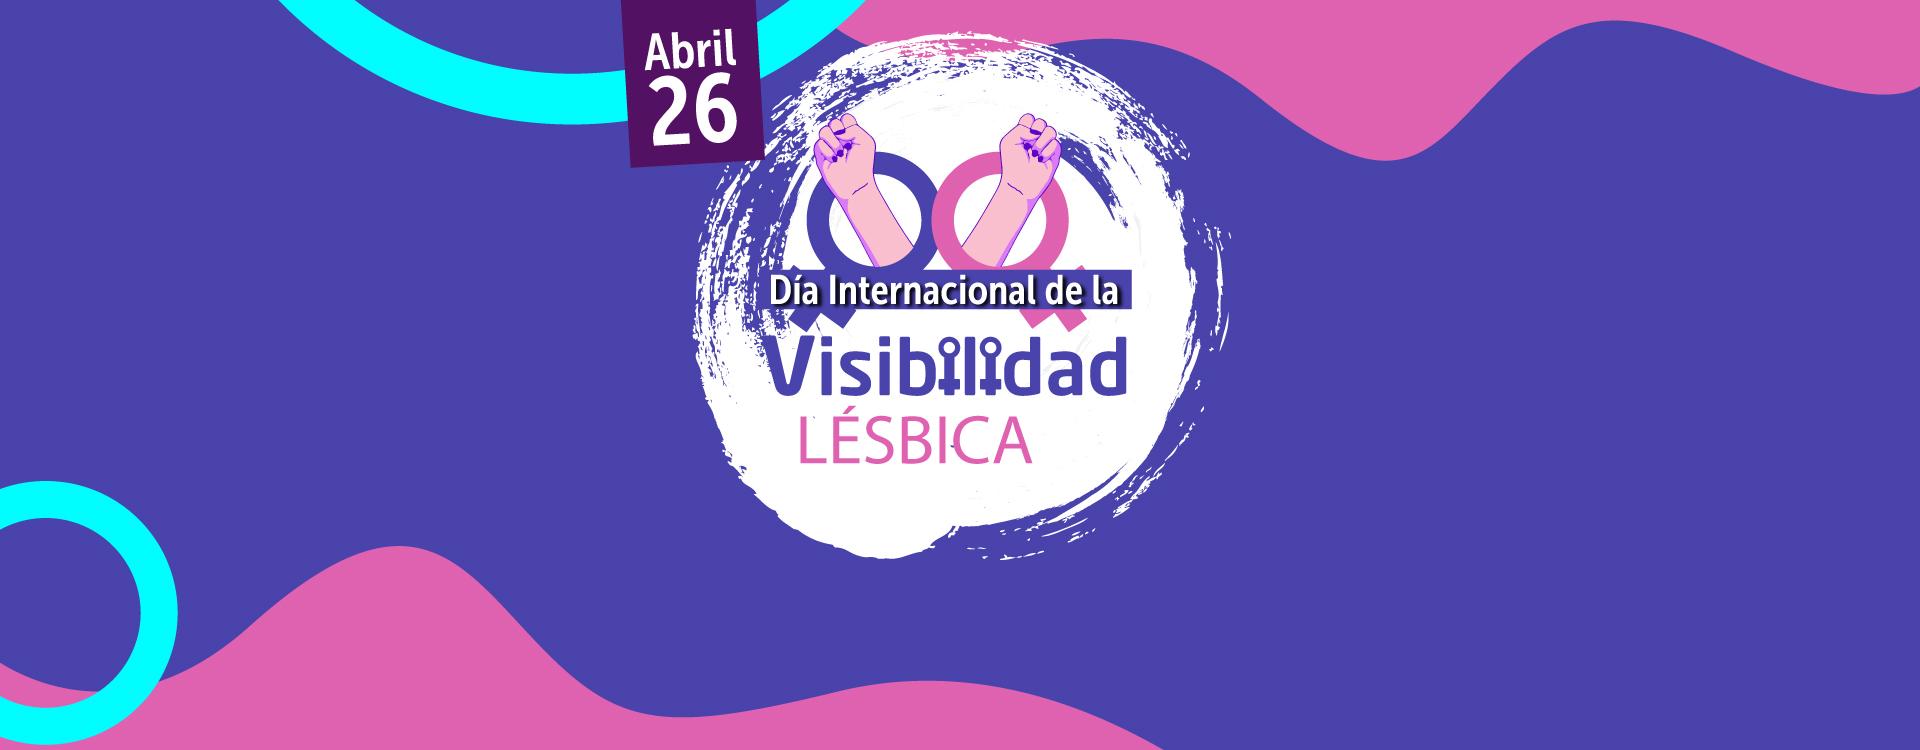 Imagen diseñada con nombre de Día Internacional de la Visibilidad Lesbica